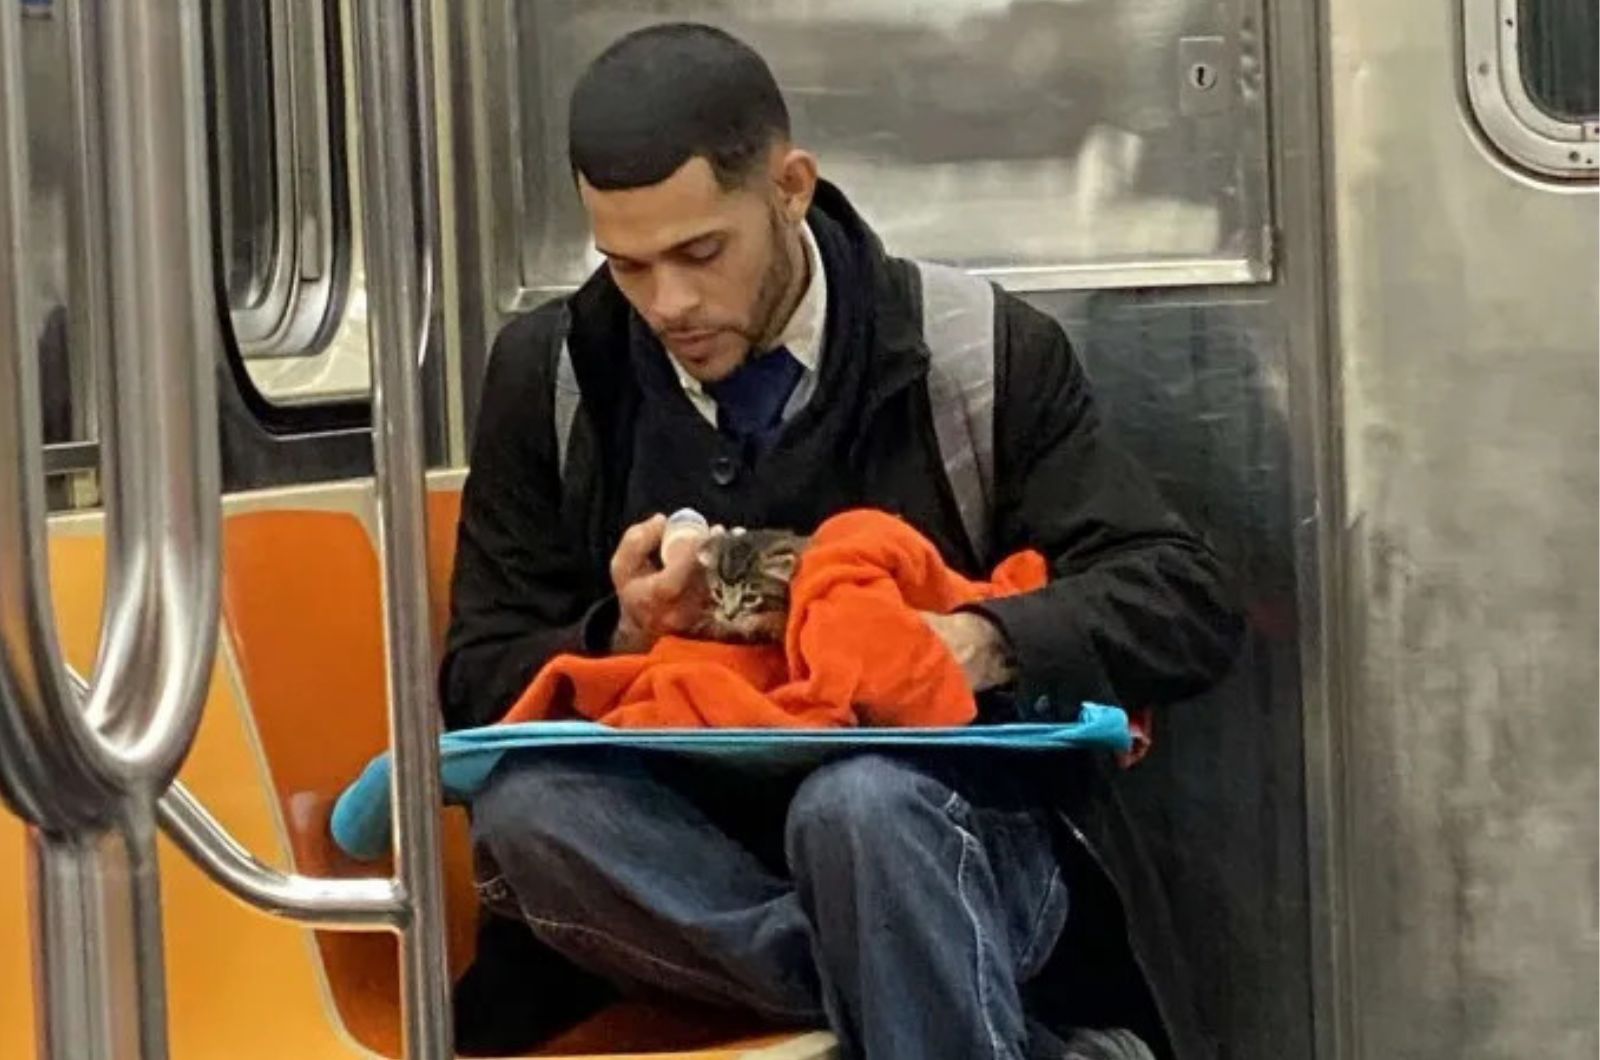 man helps tiny kitten on subway